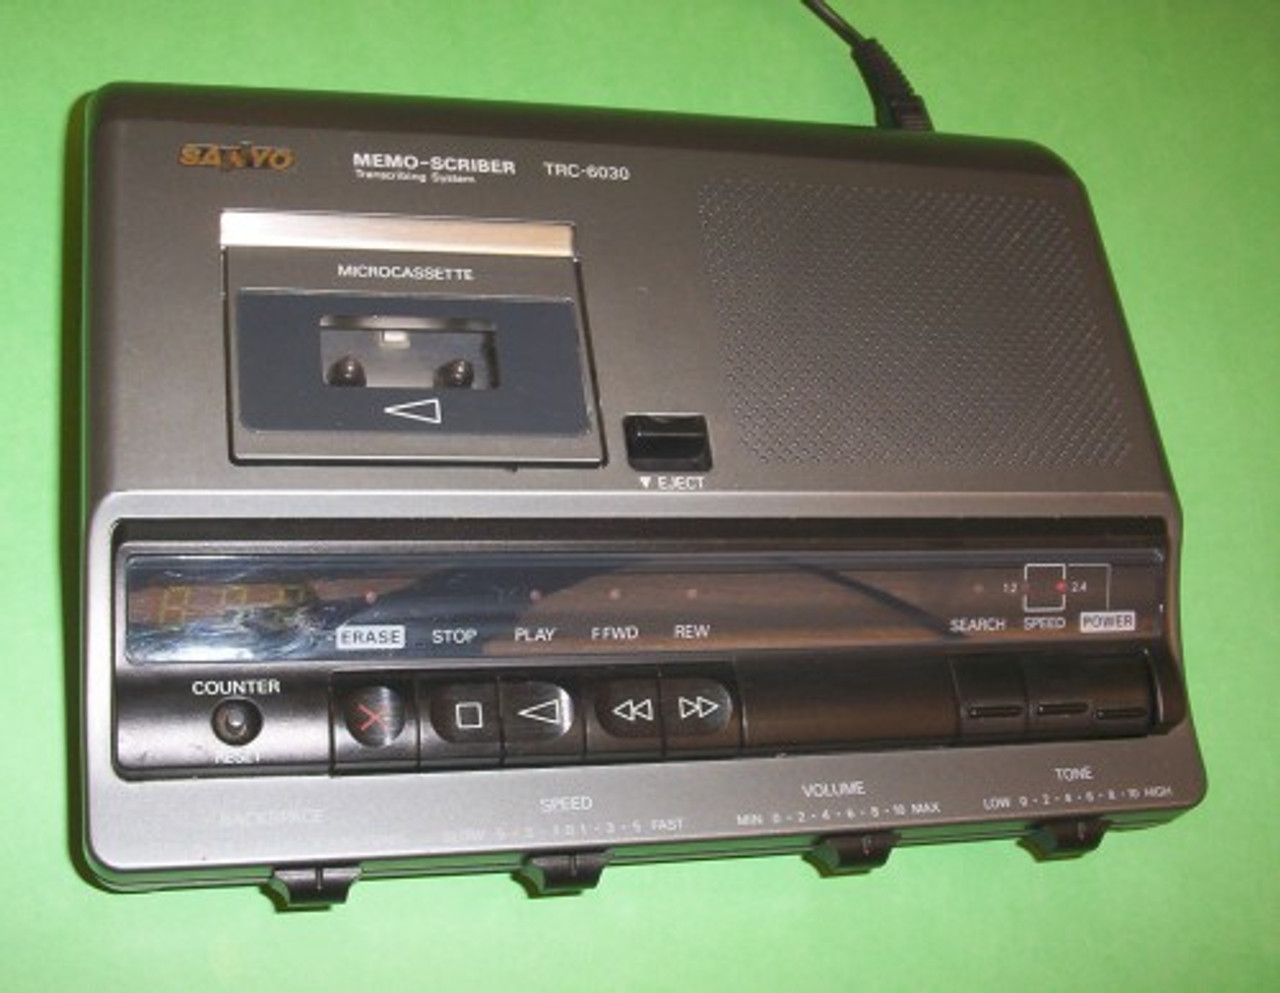 Sanyo Trc-6030  Micro cassette Transcriber controls